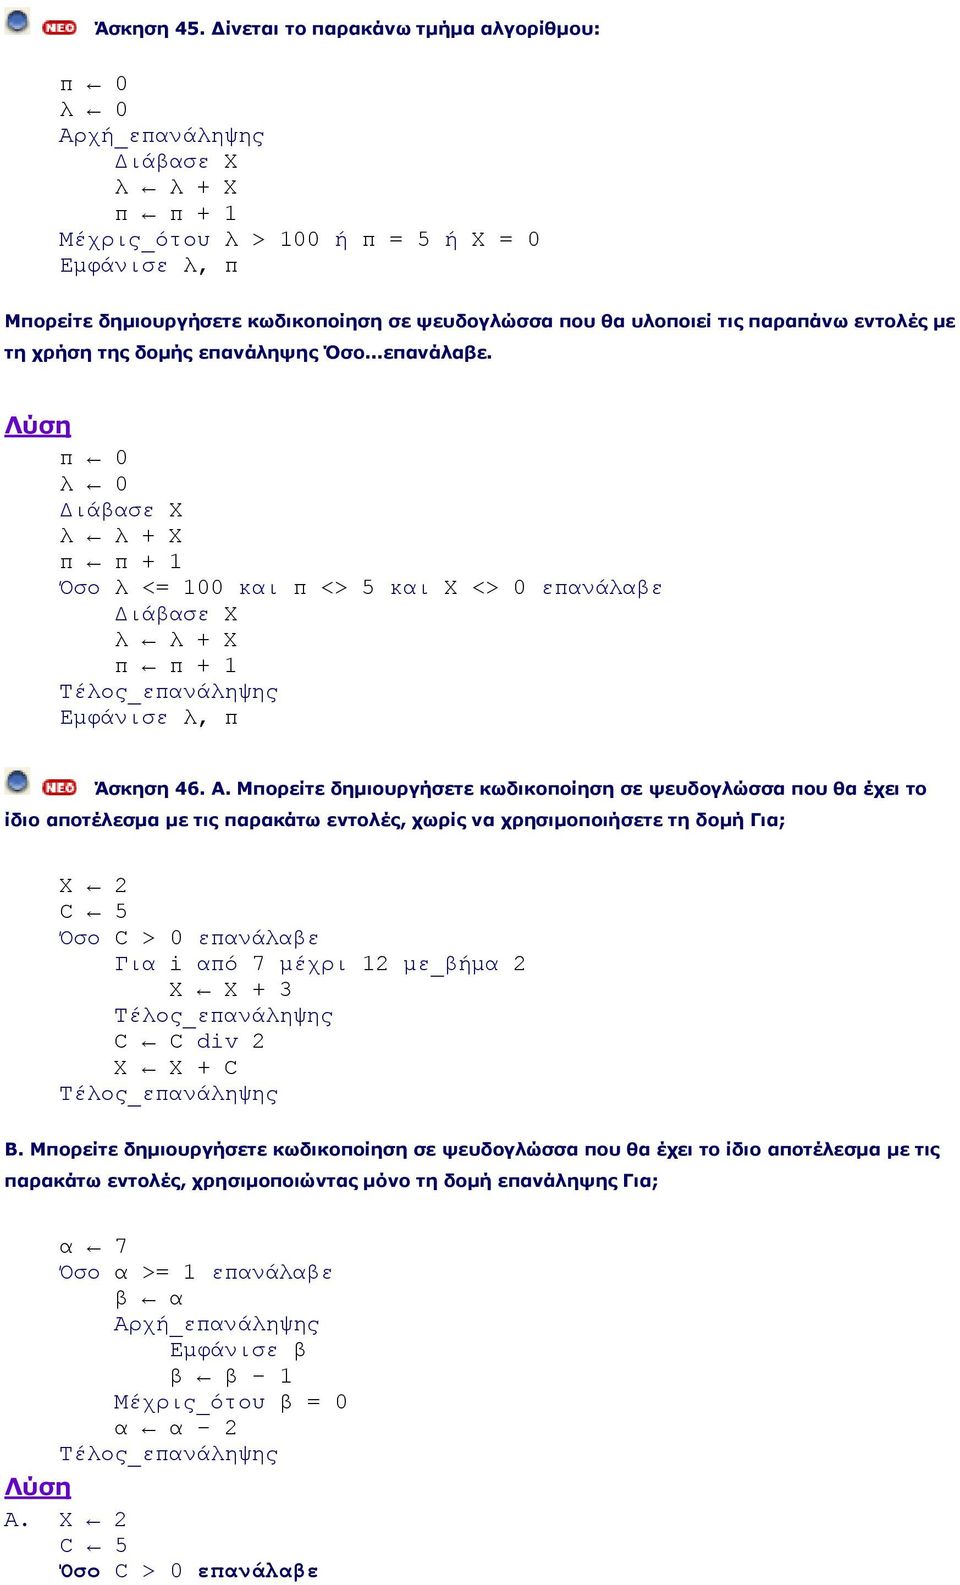 παραπάνω εντολές με τη χρήση της δομής επανάληψης Όσο...επανάλαβε. π 0 λ 0 Διάβασε Χ λ λ + Χ π π + 1 Όσο λ <= 100 και π <> 5 και Χ <> 0 επανάλαβε Διάβασε Χ λ λ + Χ π π + 1 Εμφάνισε λ, π Άσκηση 46. Α.